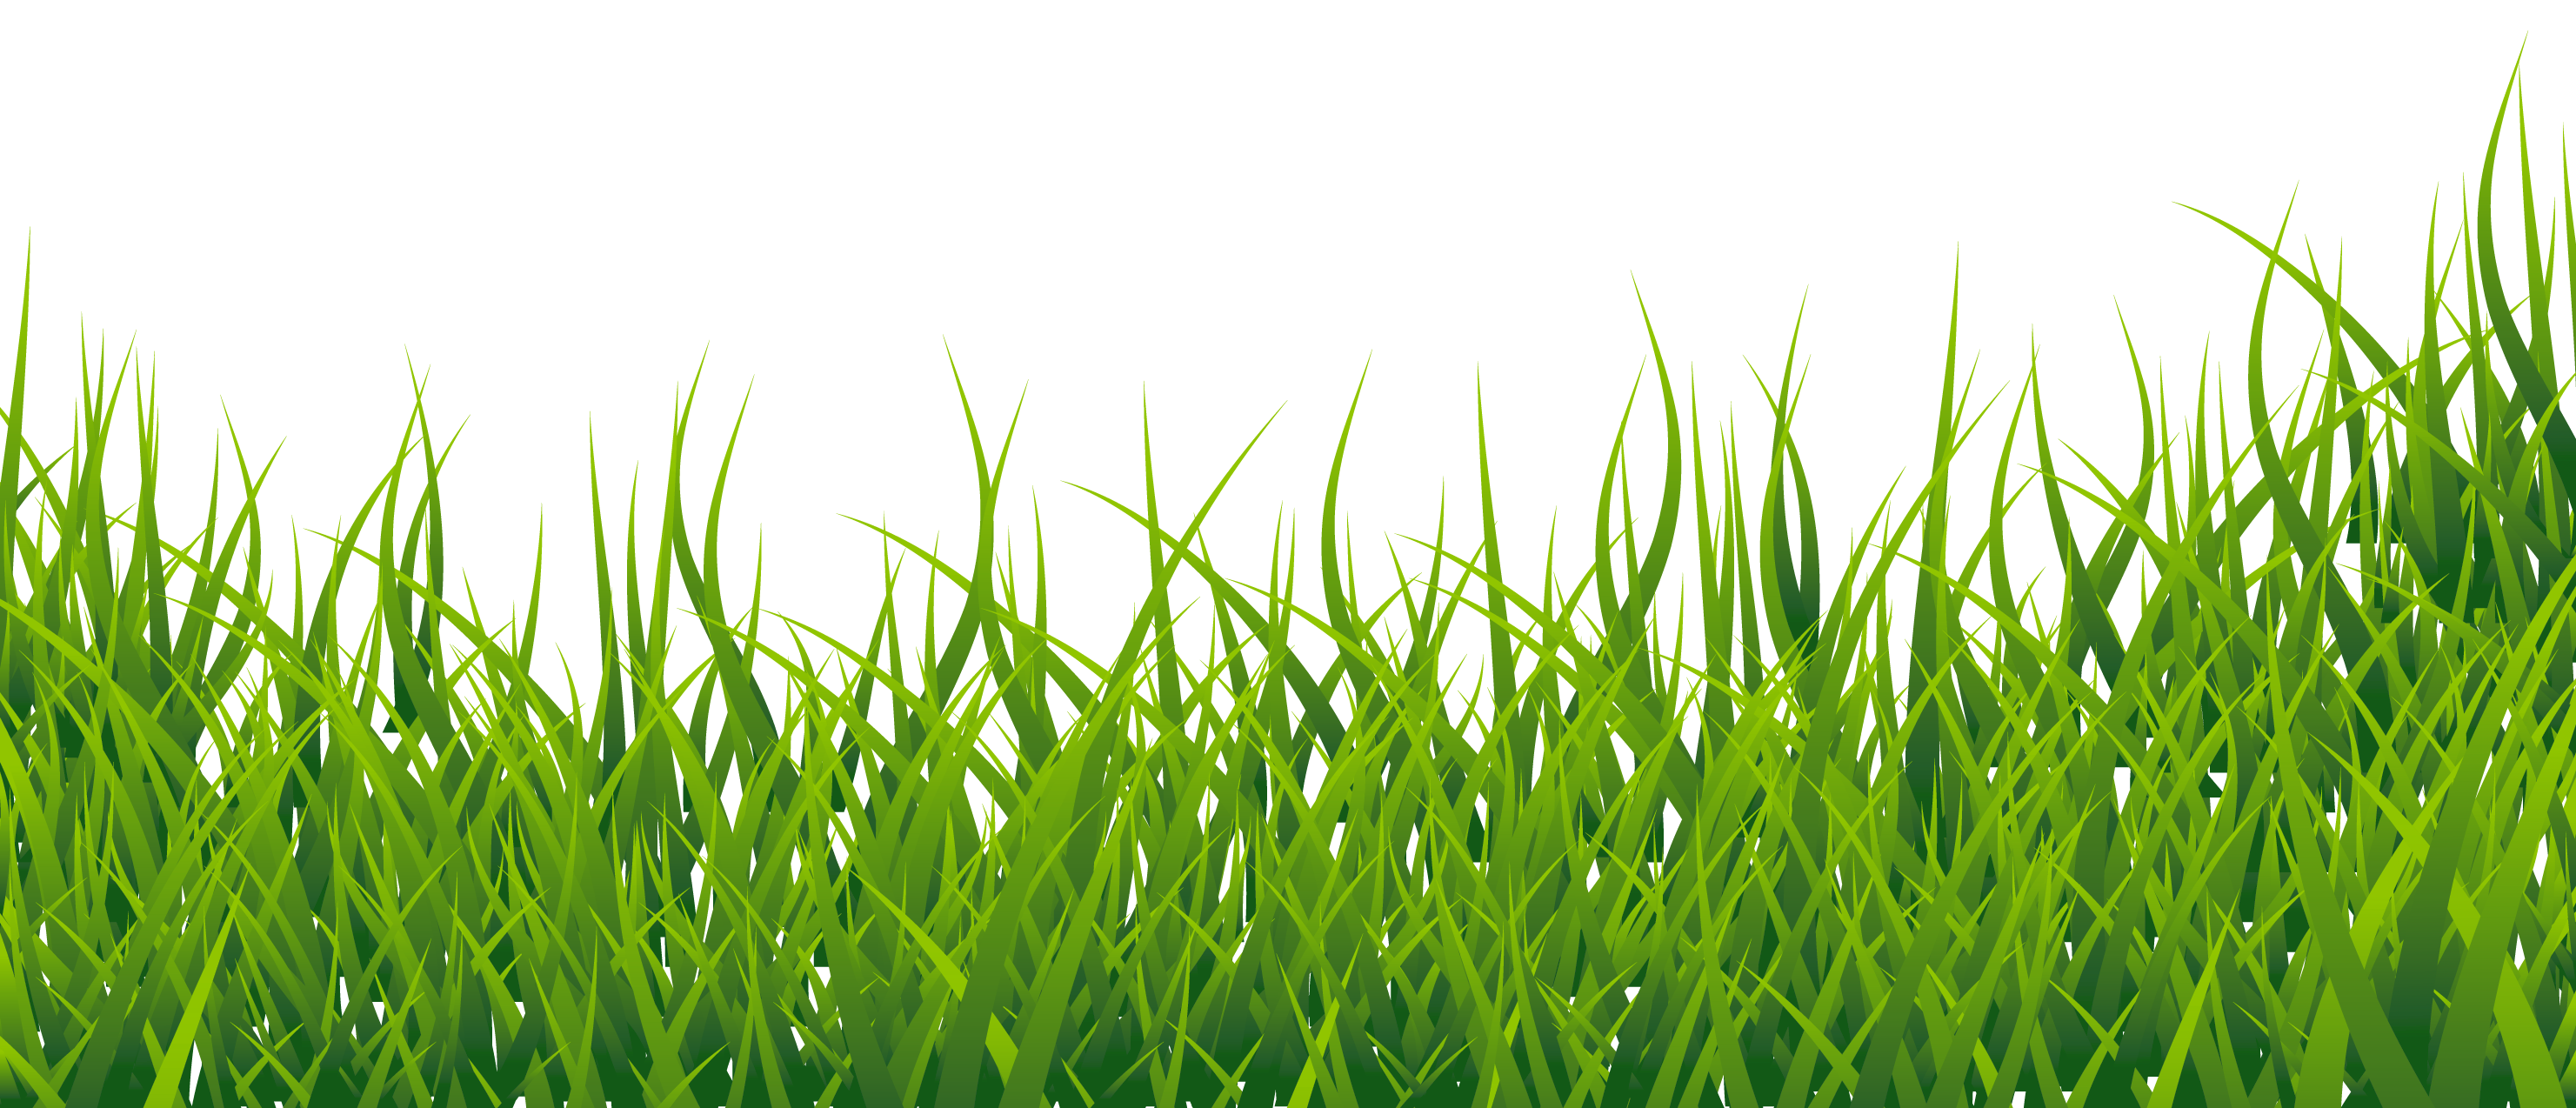 Grass field clipart transparent 